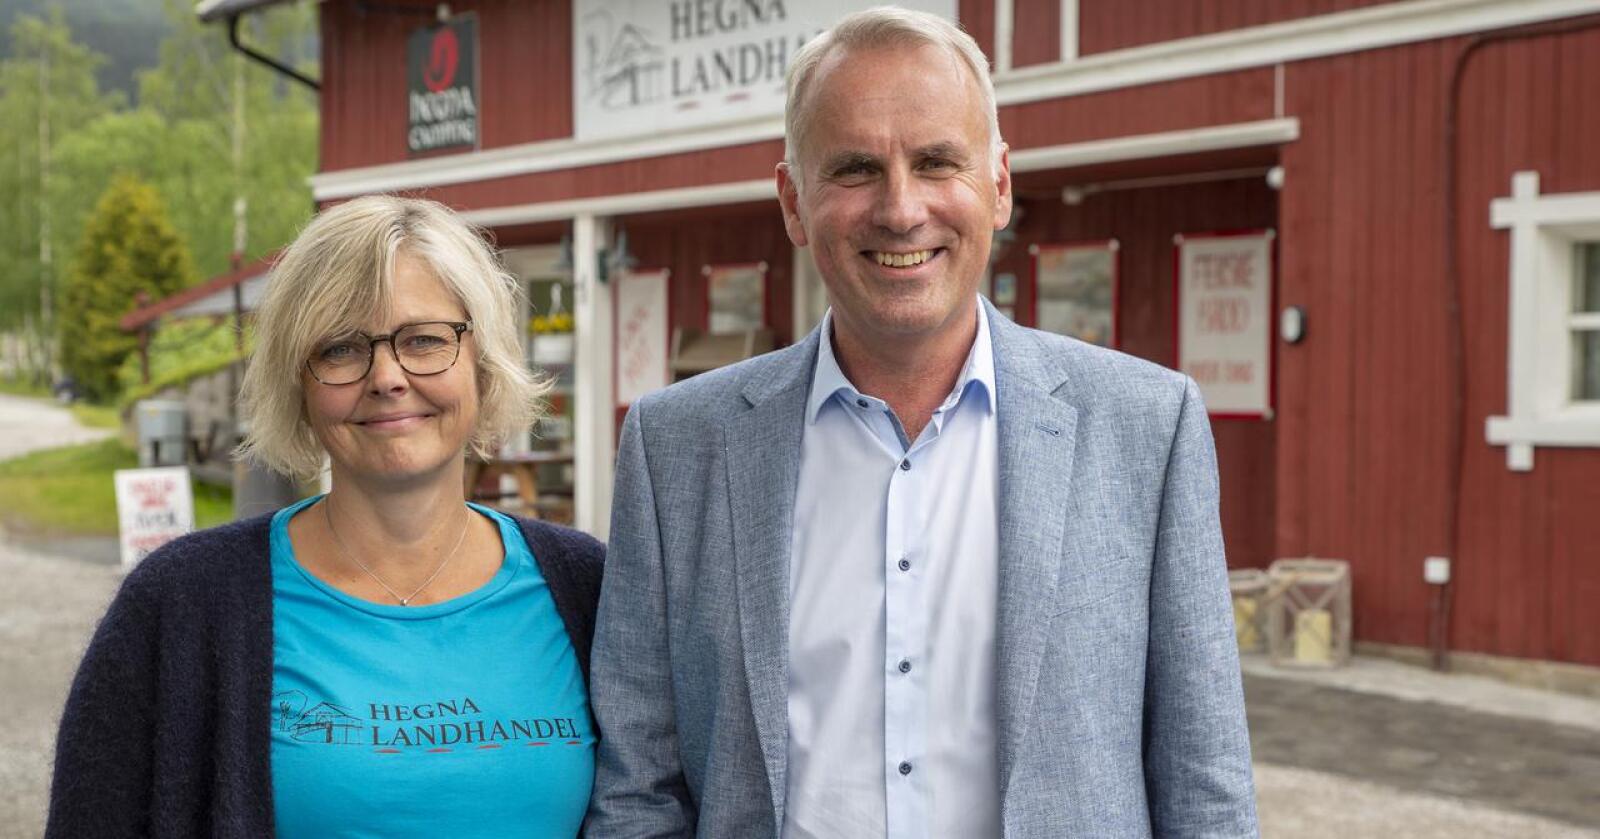 Gro Cathrine Aasgrav er dagleg leiar i Hegna Landhandel, og eig butikken saman med ektemannen Hans Olav Bakås. Foto: Kari Nygard Tvilde